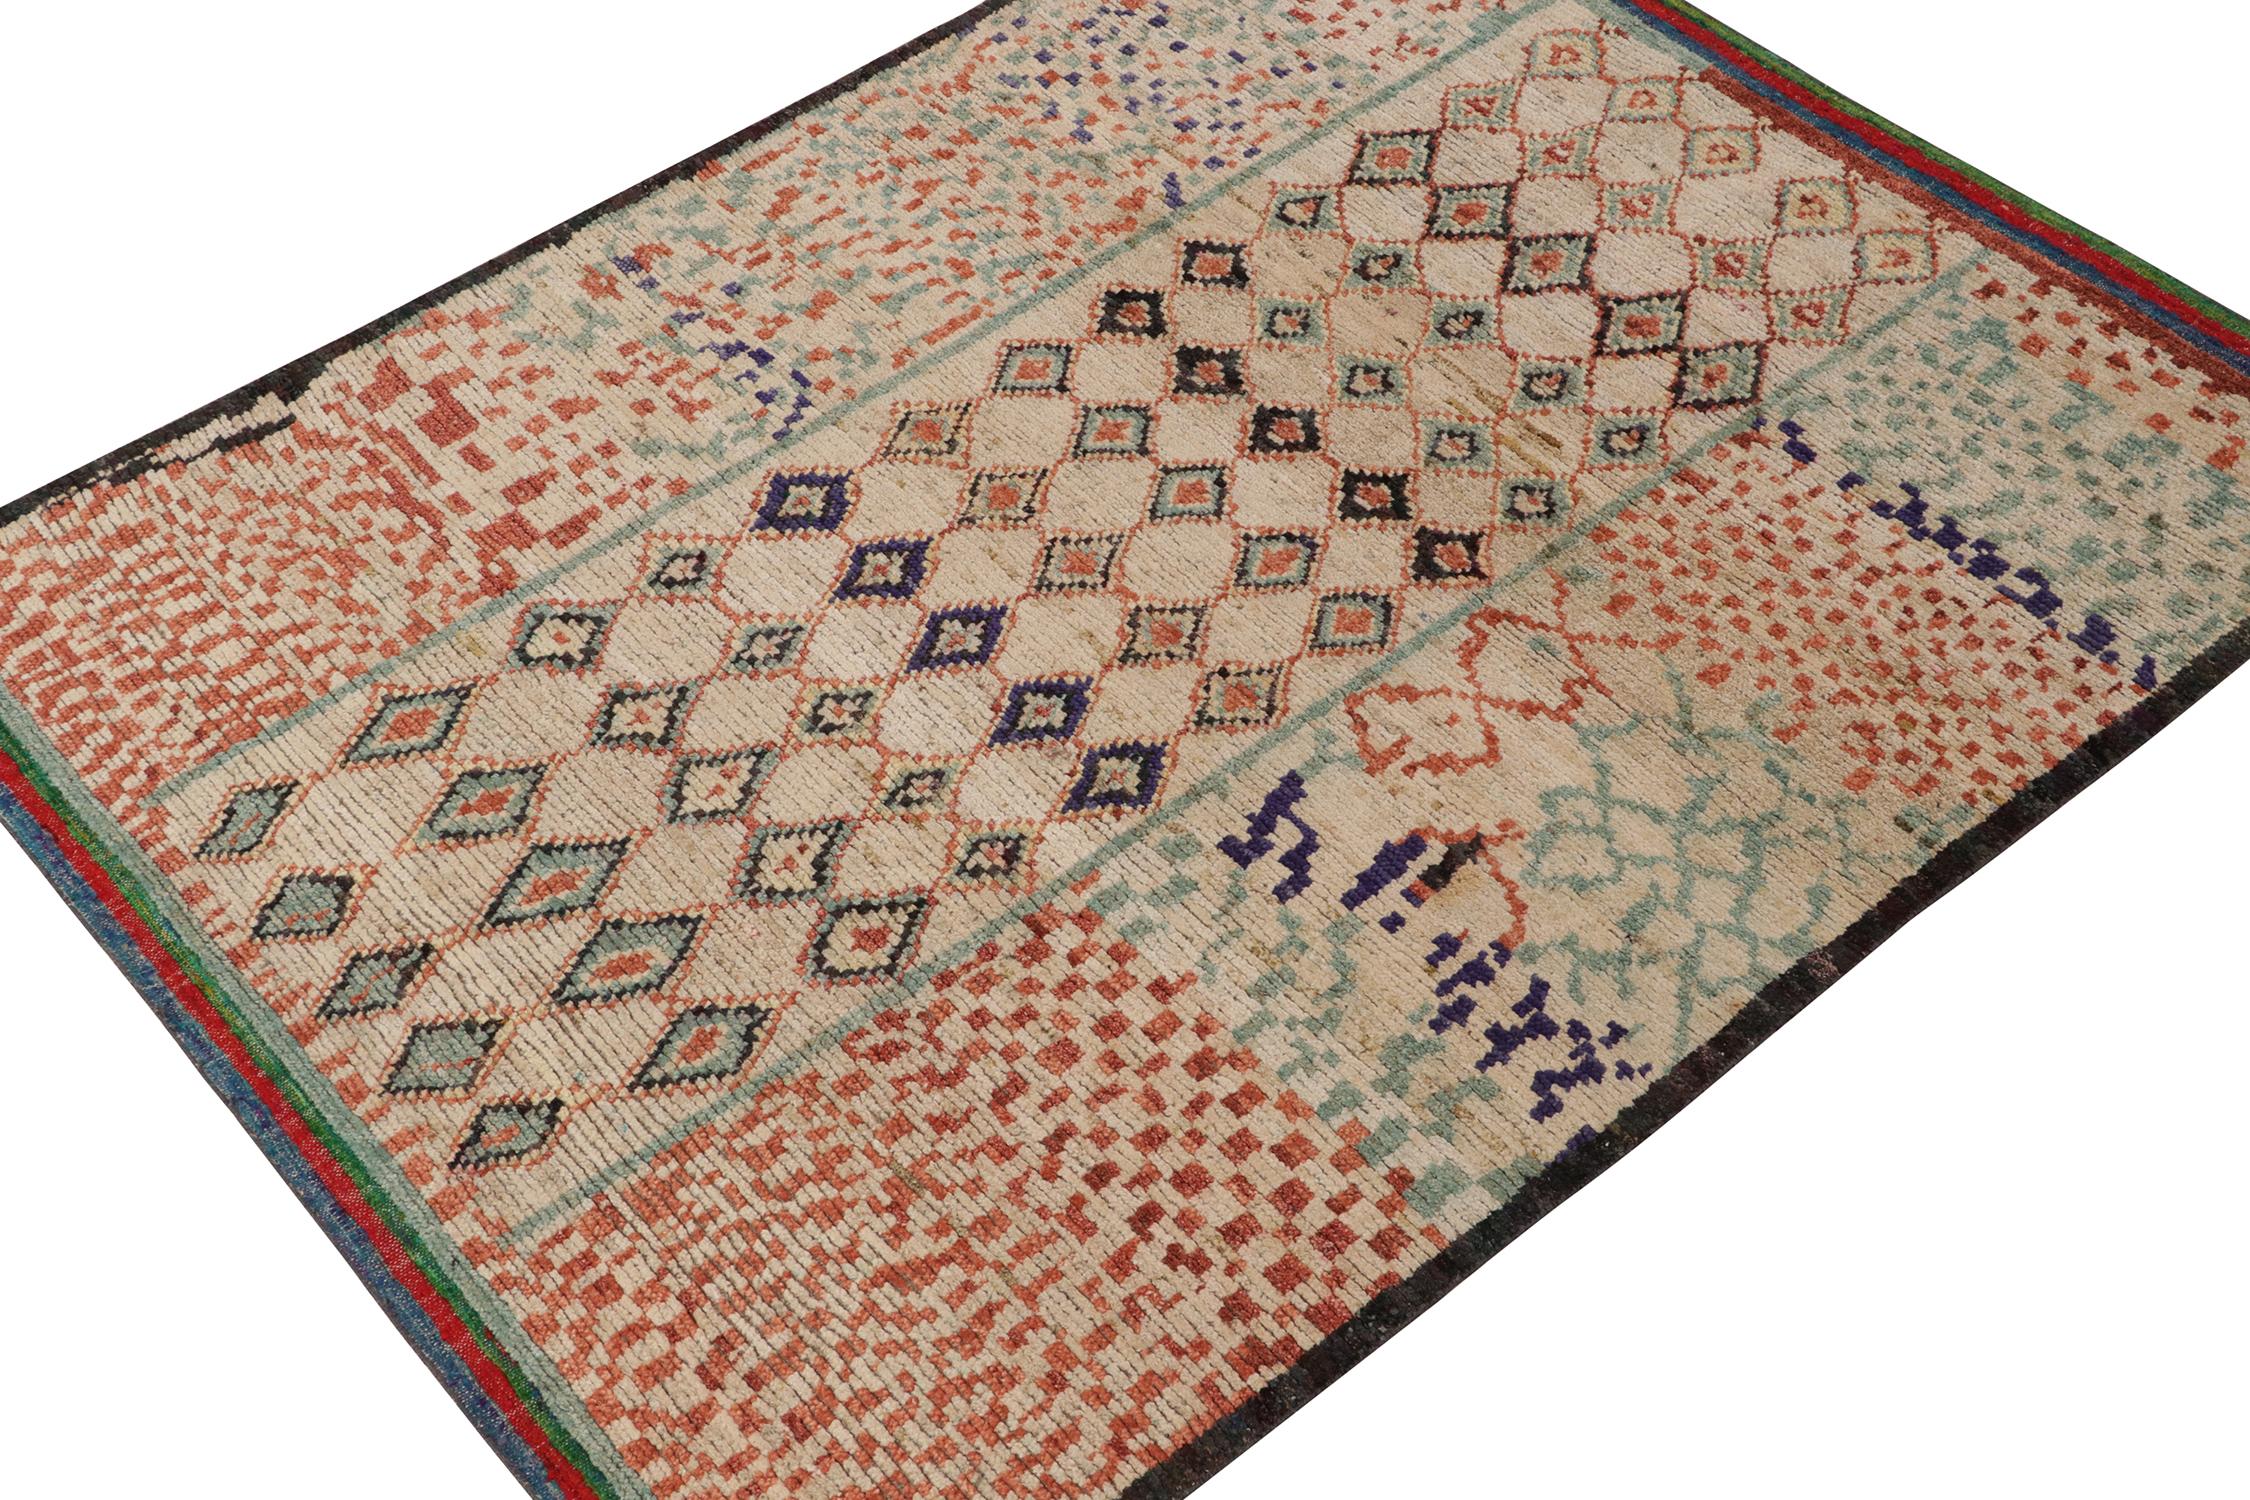 Ce tapis contemporain 6x7 est le dernier né de la nouvelle collection marocaine de Rug & Kilim, une version audacieuse de ce style emblématique. Noué à la main dans un mélange de laine, de soie et de coton.

Plus loin dans la conception :

Le